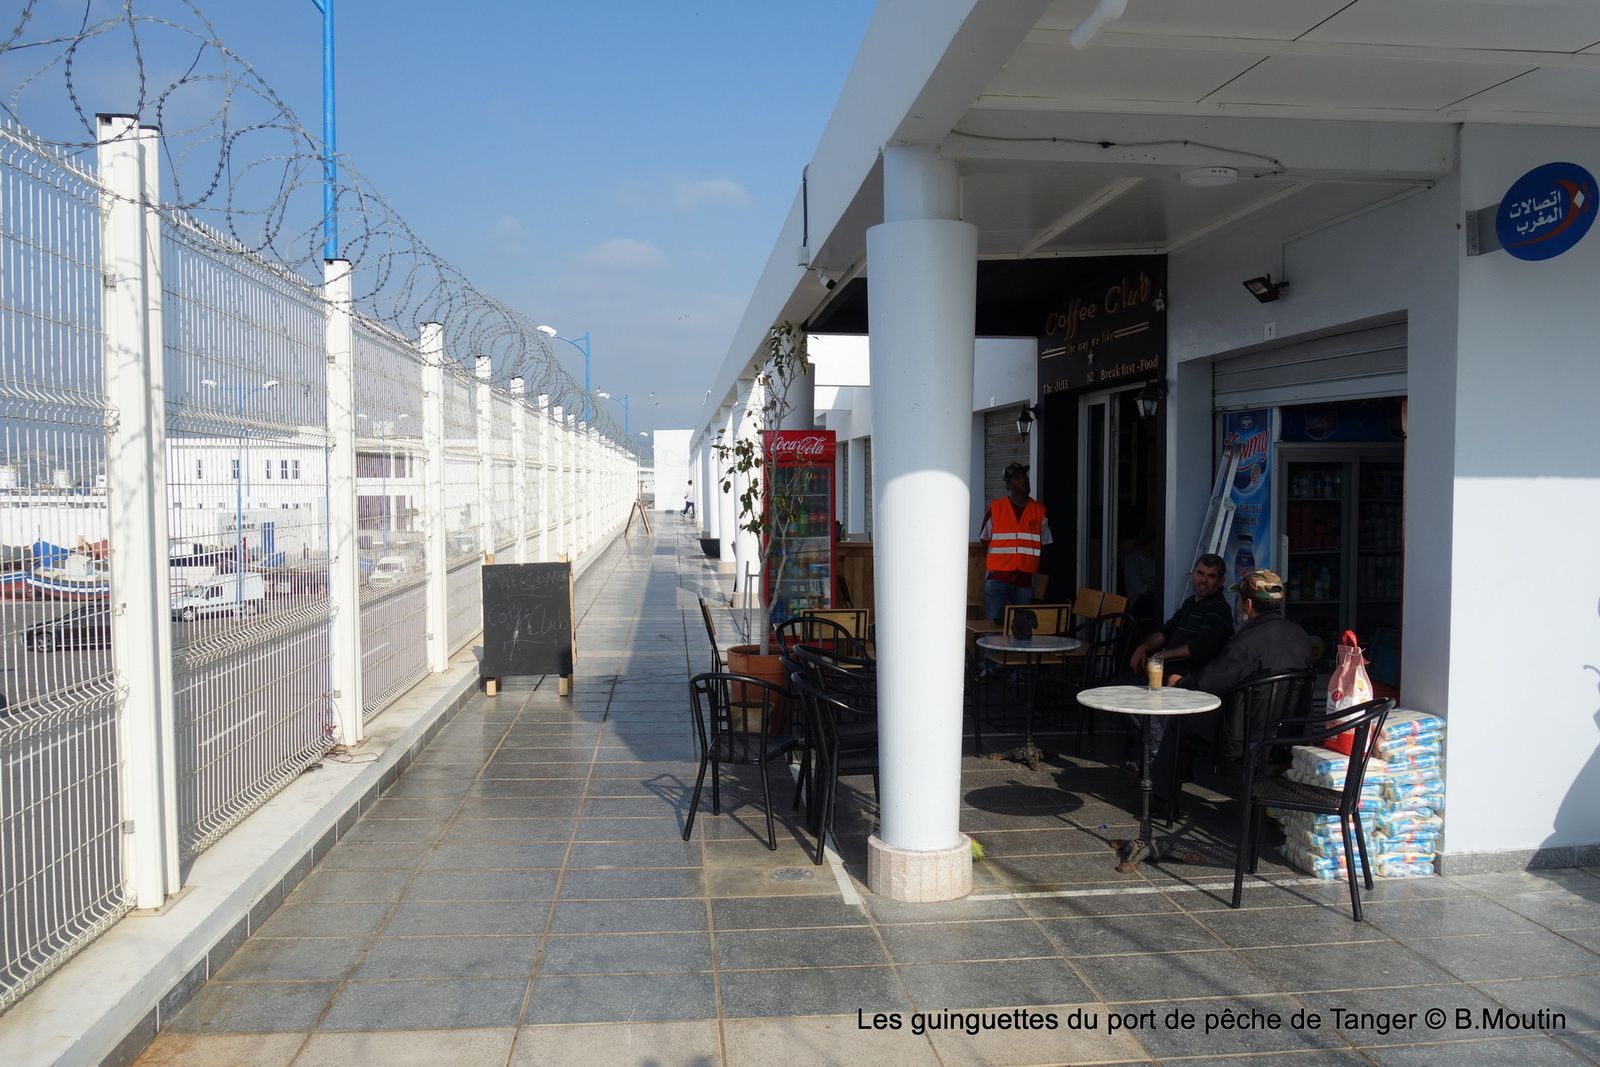 Quoi de neuf à Tanger : les guinguettes du Port de pêche (7 photos)